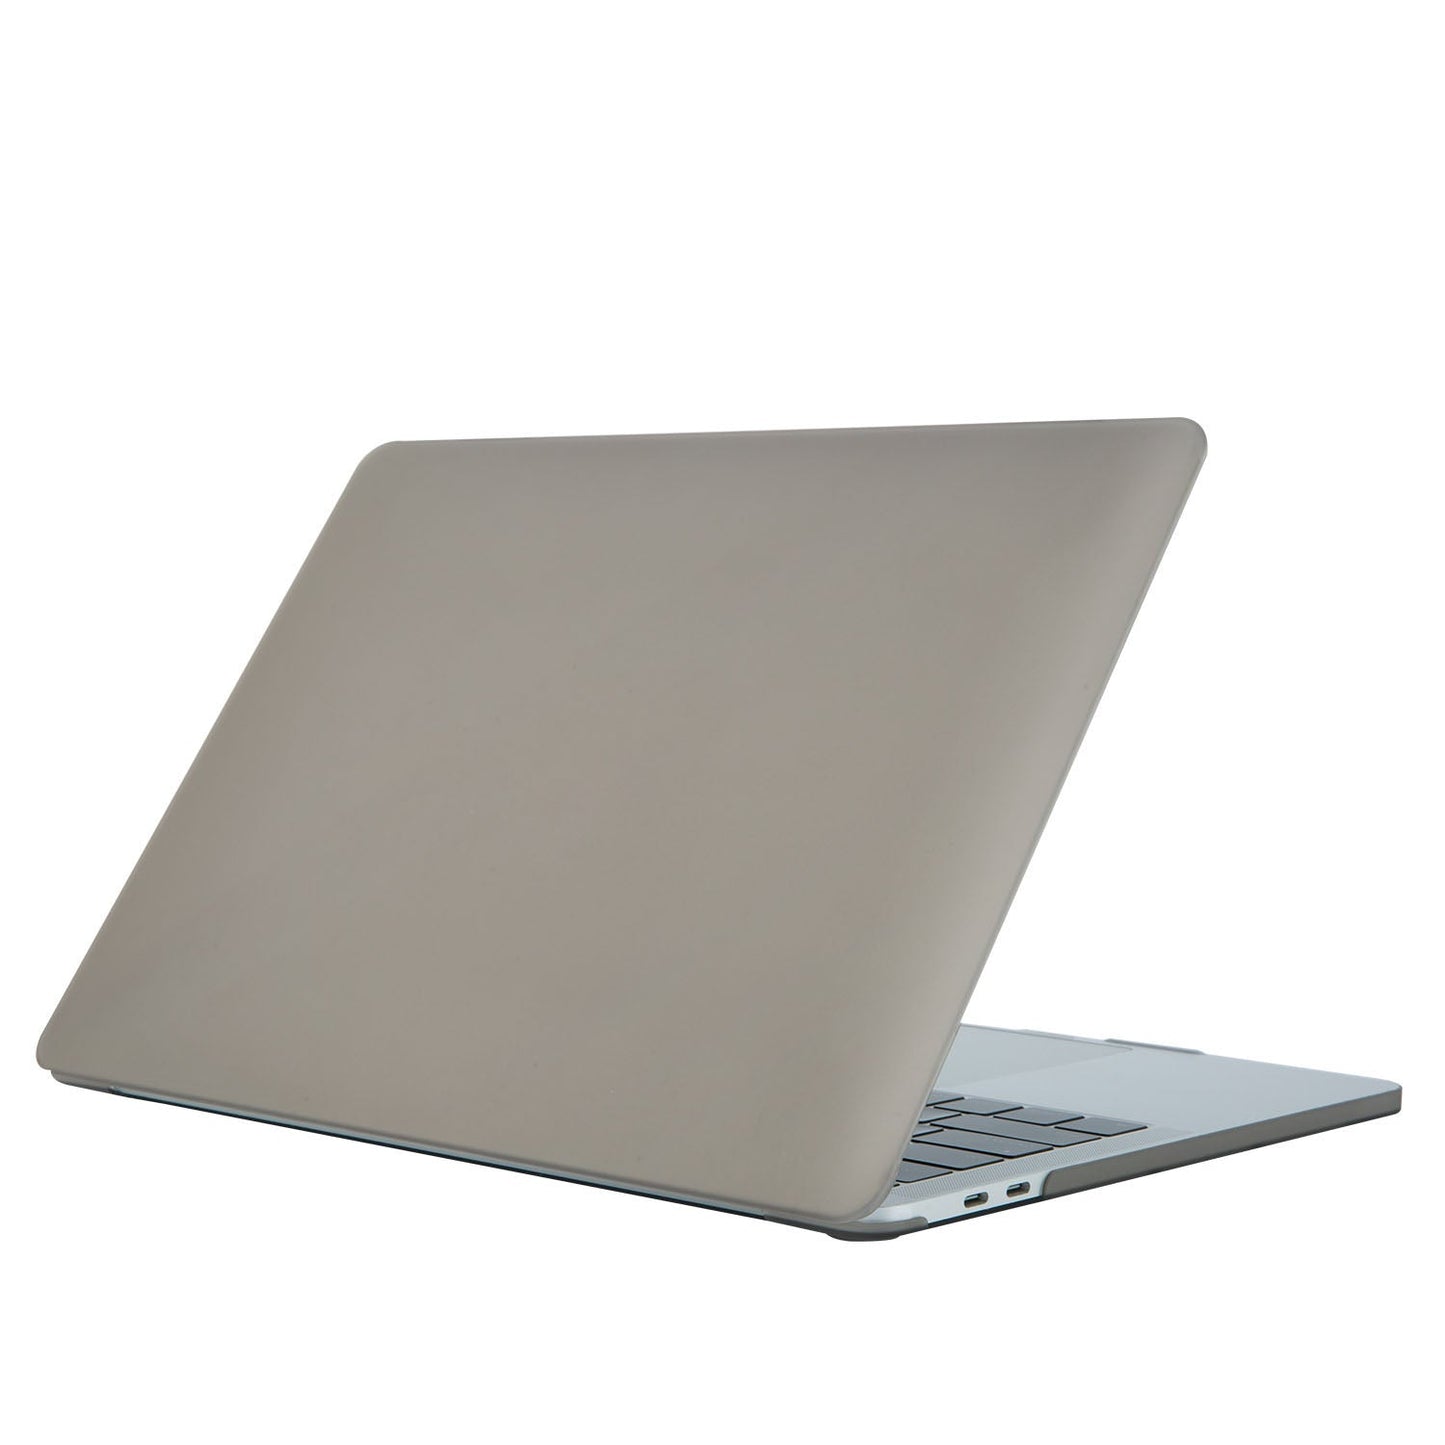 Carcasa New Macbook Pro Retina 15" A1707 / A1990